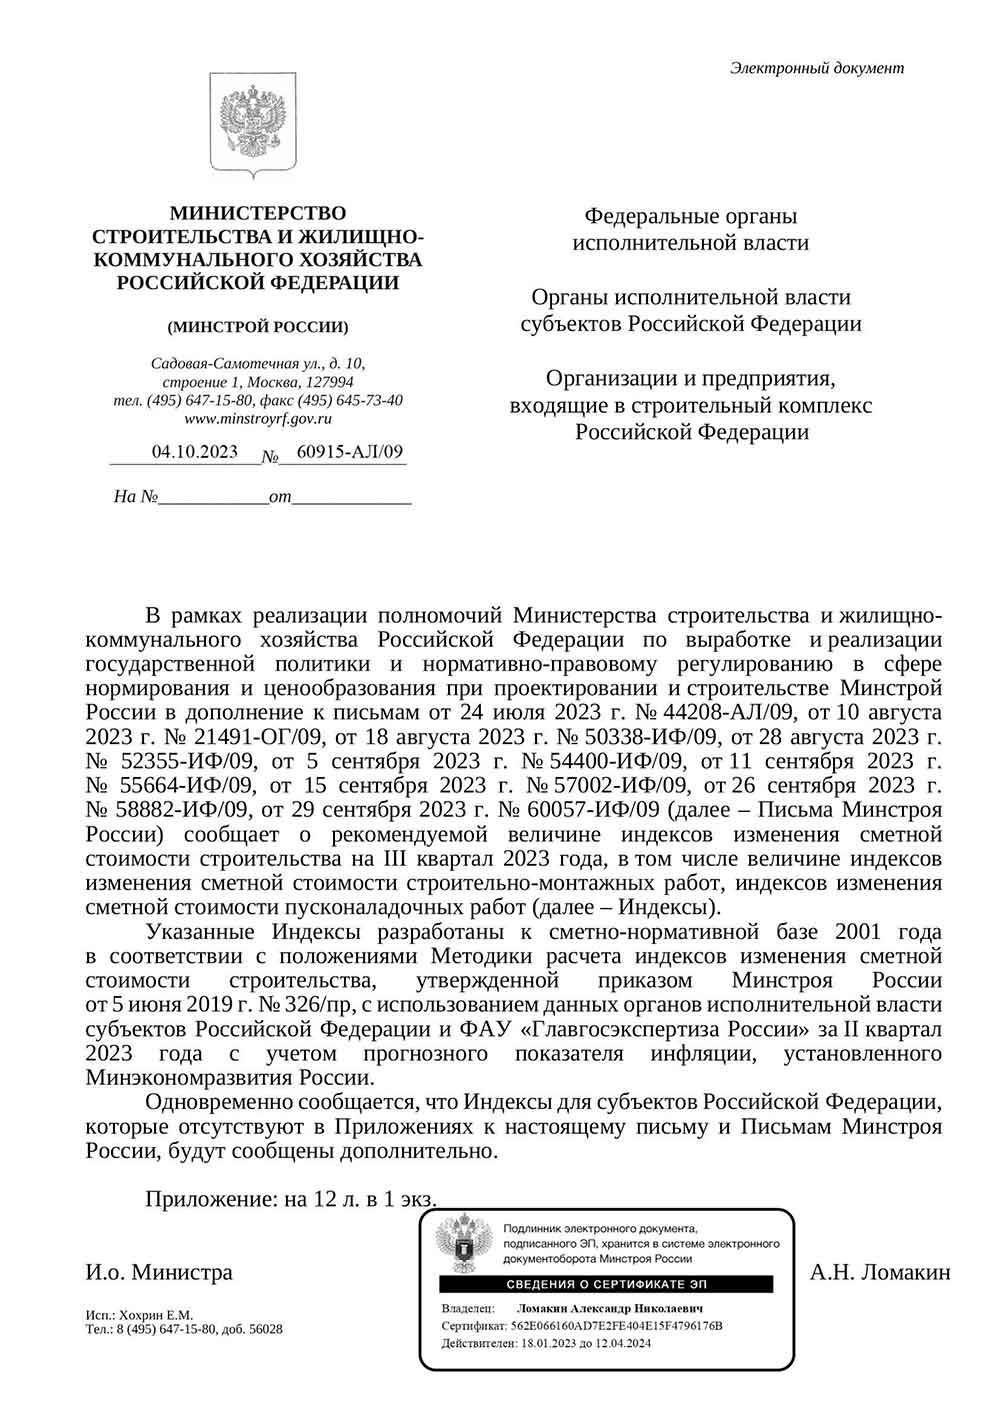 Письмо Минстроя РФ №60915-АЛ/09 от 04.10.2023 г.